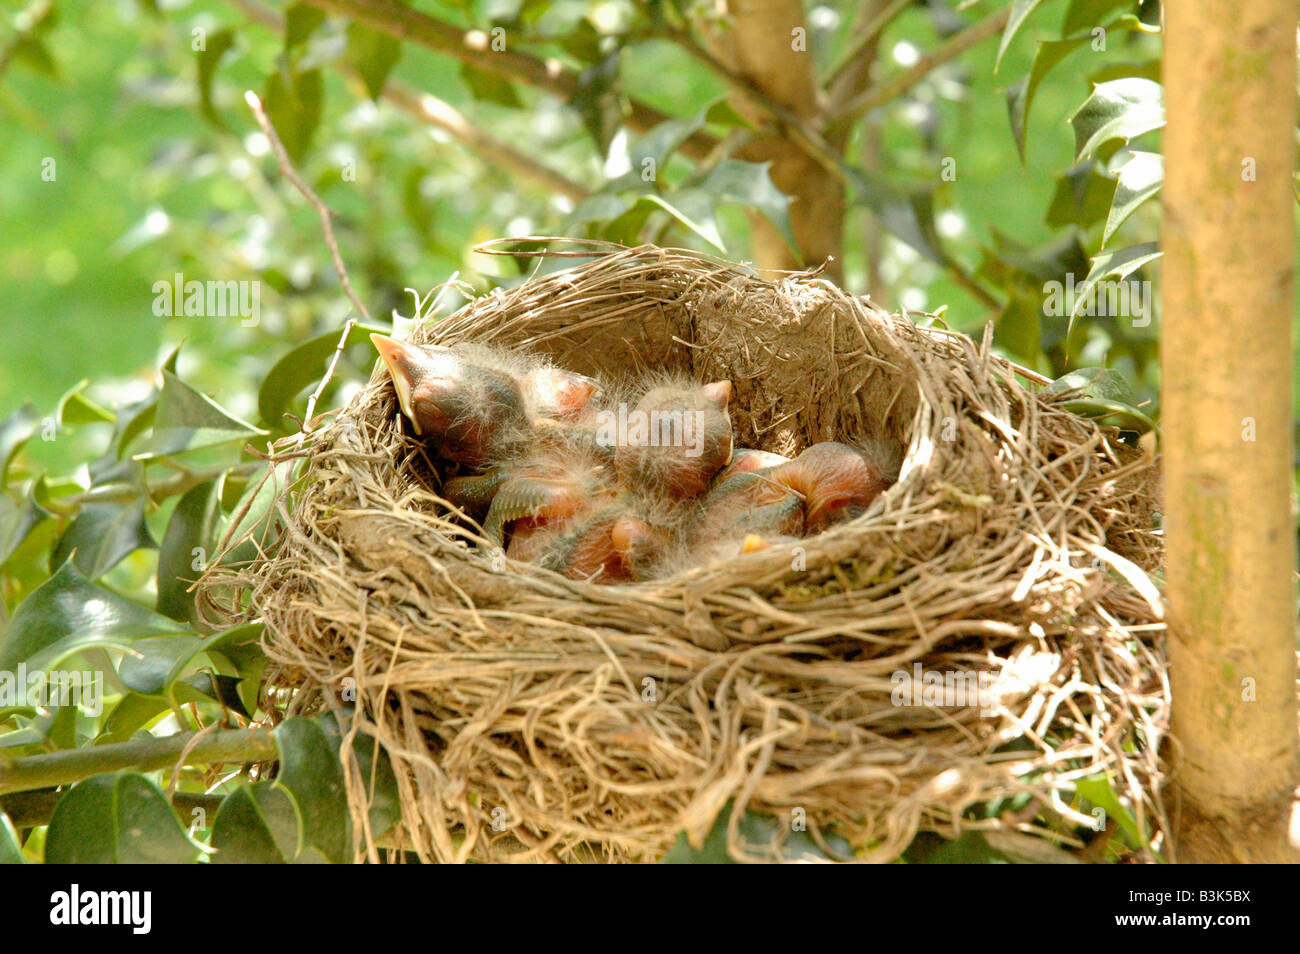 Hatchling pajaritos en el nido Foto de stock